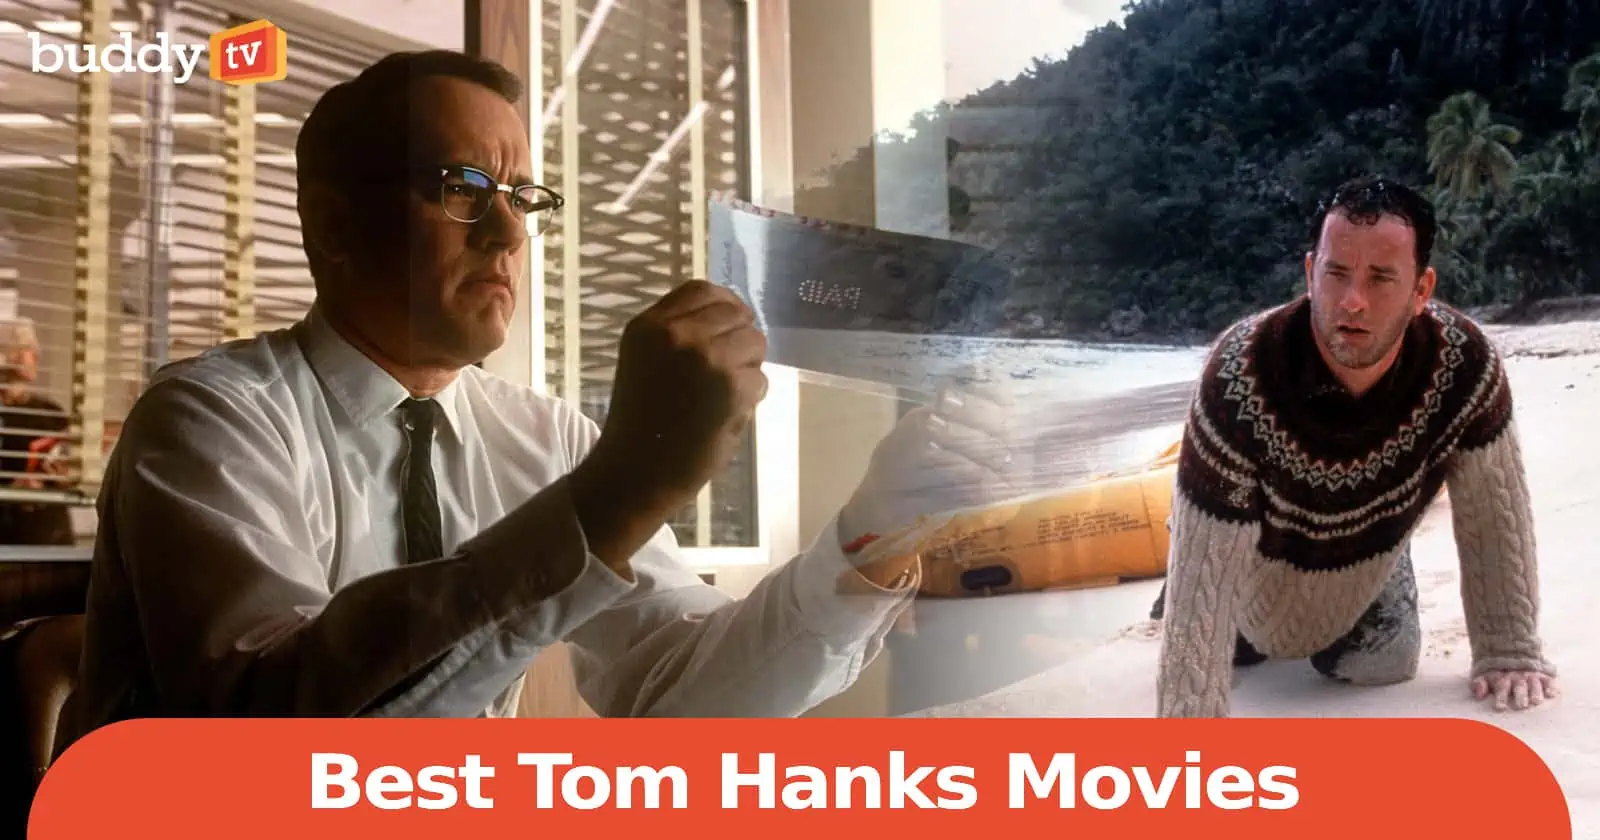 10 Best Tom Hanks Movies, Ranked by Viewers